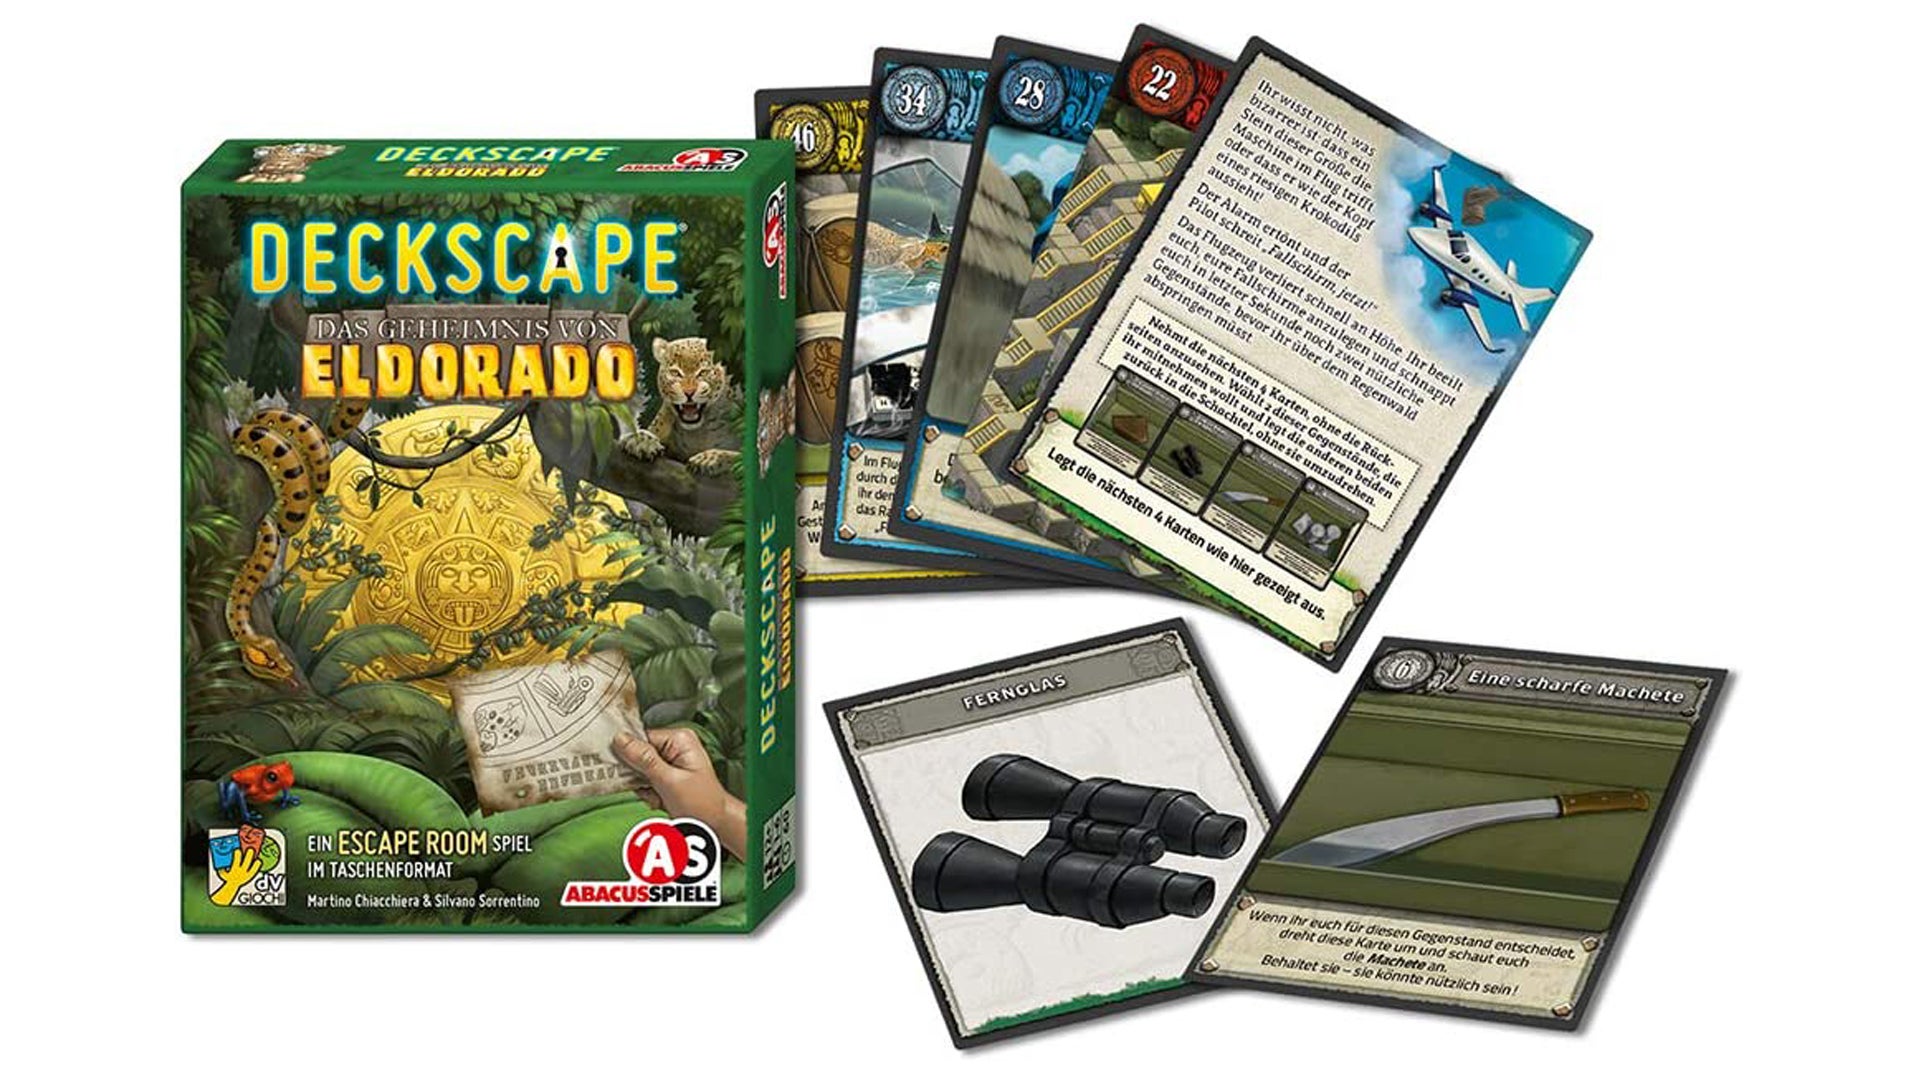 Deckscape escape room game cards